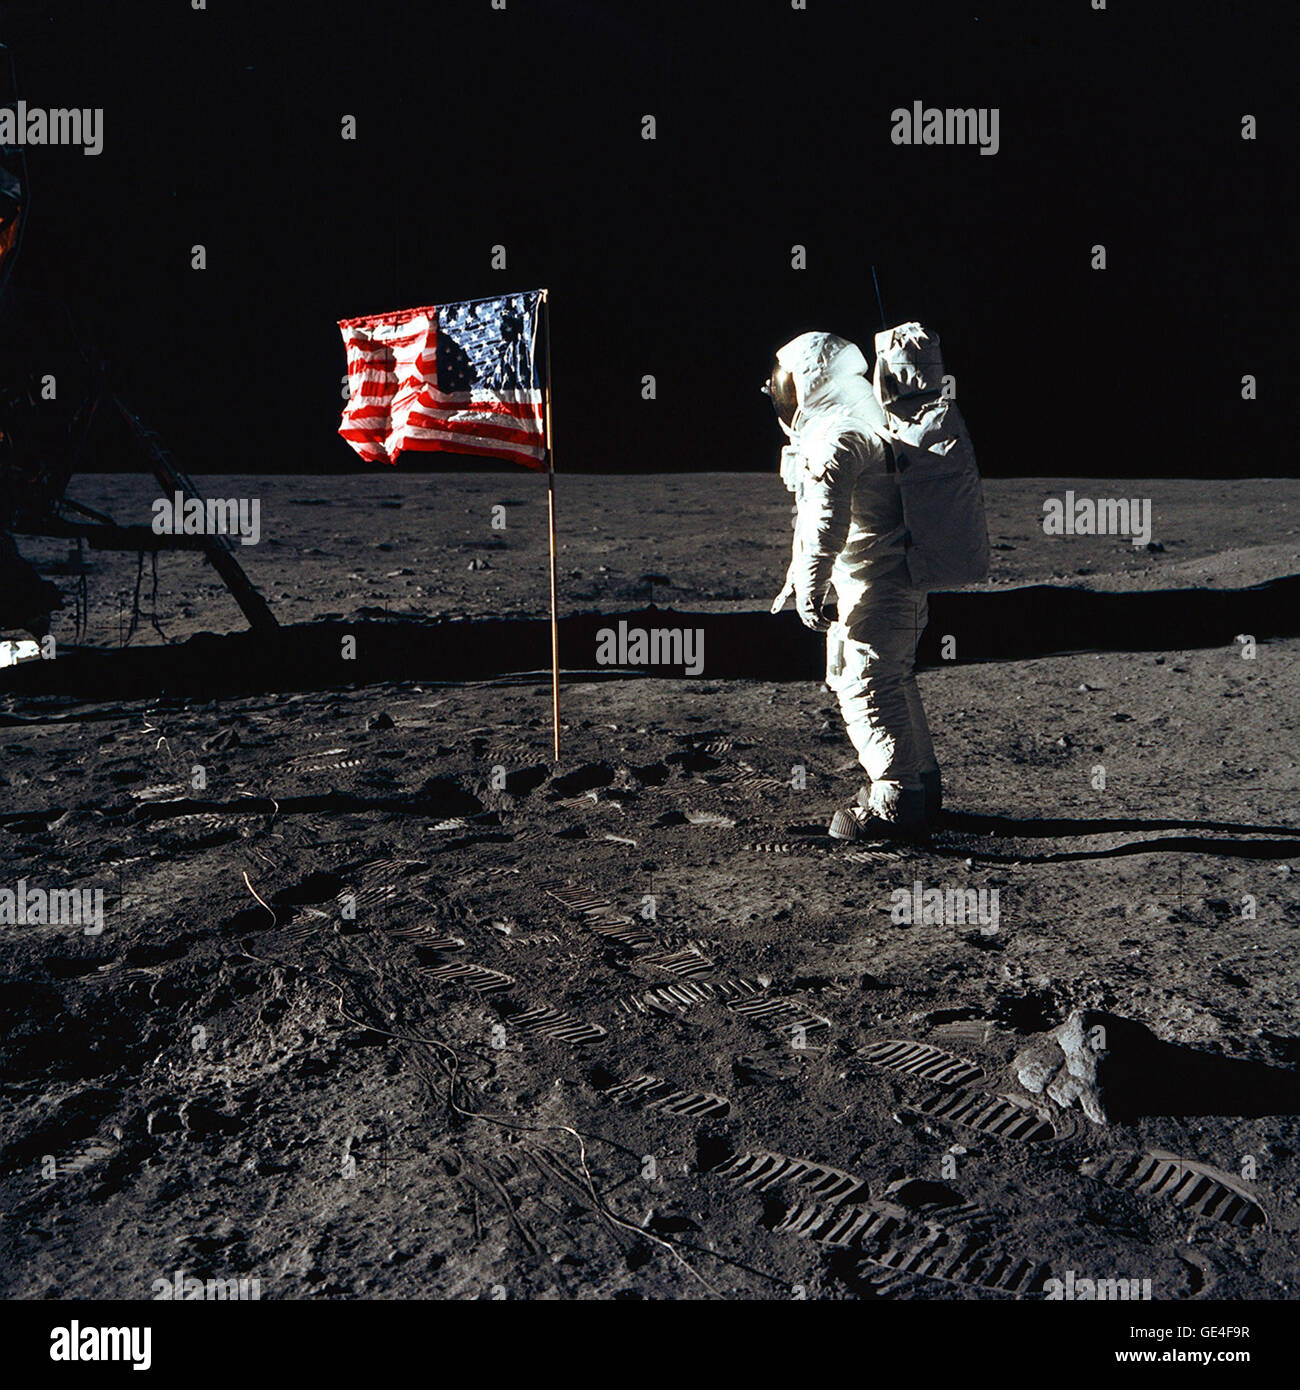 (20 Juli 1969) Astronaut Buzz Aldrin, Pilot der Mondlandefähre der ersten Mondlandung Mission, posiert für ein Foto neben der bereitgestellten USA Flagge während der Apollo 11 Extravehicular Activity (EVA) auf der Mondoberfläche. Die Mondlandefähre (LM) ist auf der linken Seite, und die Fußspuren der Astronauten sind deutlich sichtbar im Boden des Mondes. Astronaut Neil A. Armstrong, Kommandant, nahm dieses Bild mit einem 70 mm Hasselblad lunar Surface-Kamera. Während in der LM, der "Adler", zur Erkundung der Region Meer der Ruhe, des Mondes, Astronaut Mic Astronauten Armstrong und Aldrin abgestiegen Stockfoto